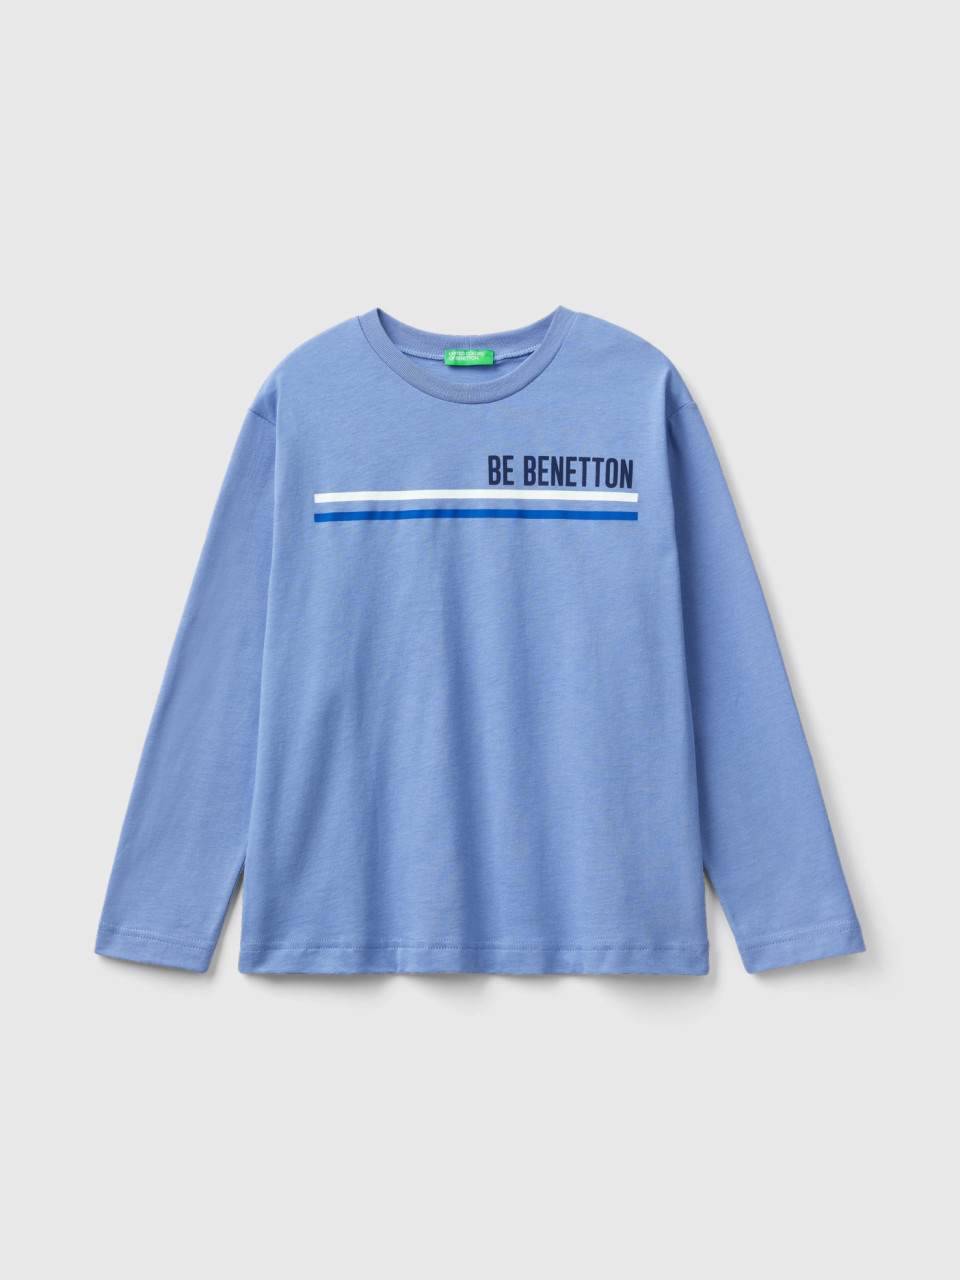 Benetton, Long Sleeve Organic Cotton T-shirt, Light Blue, Kids